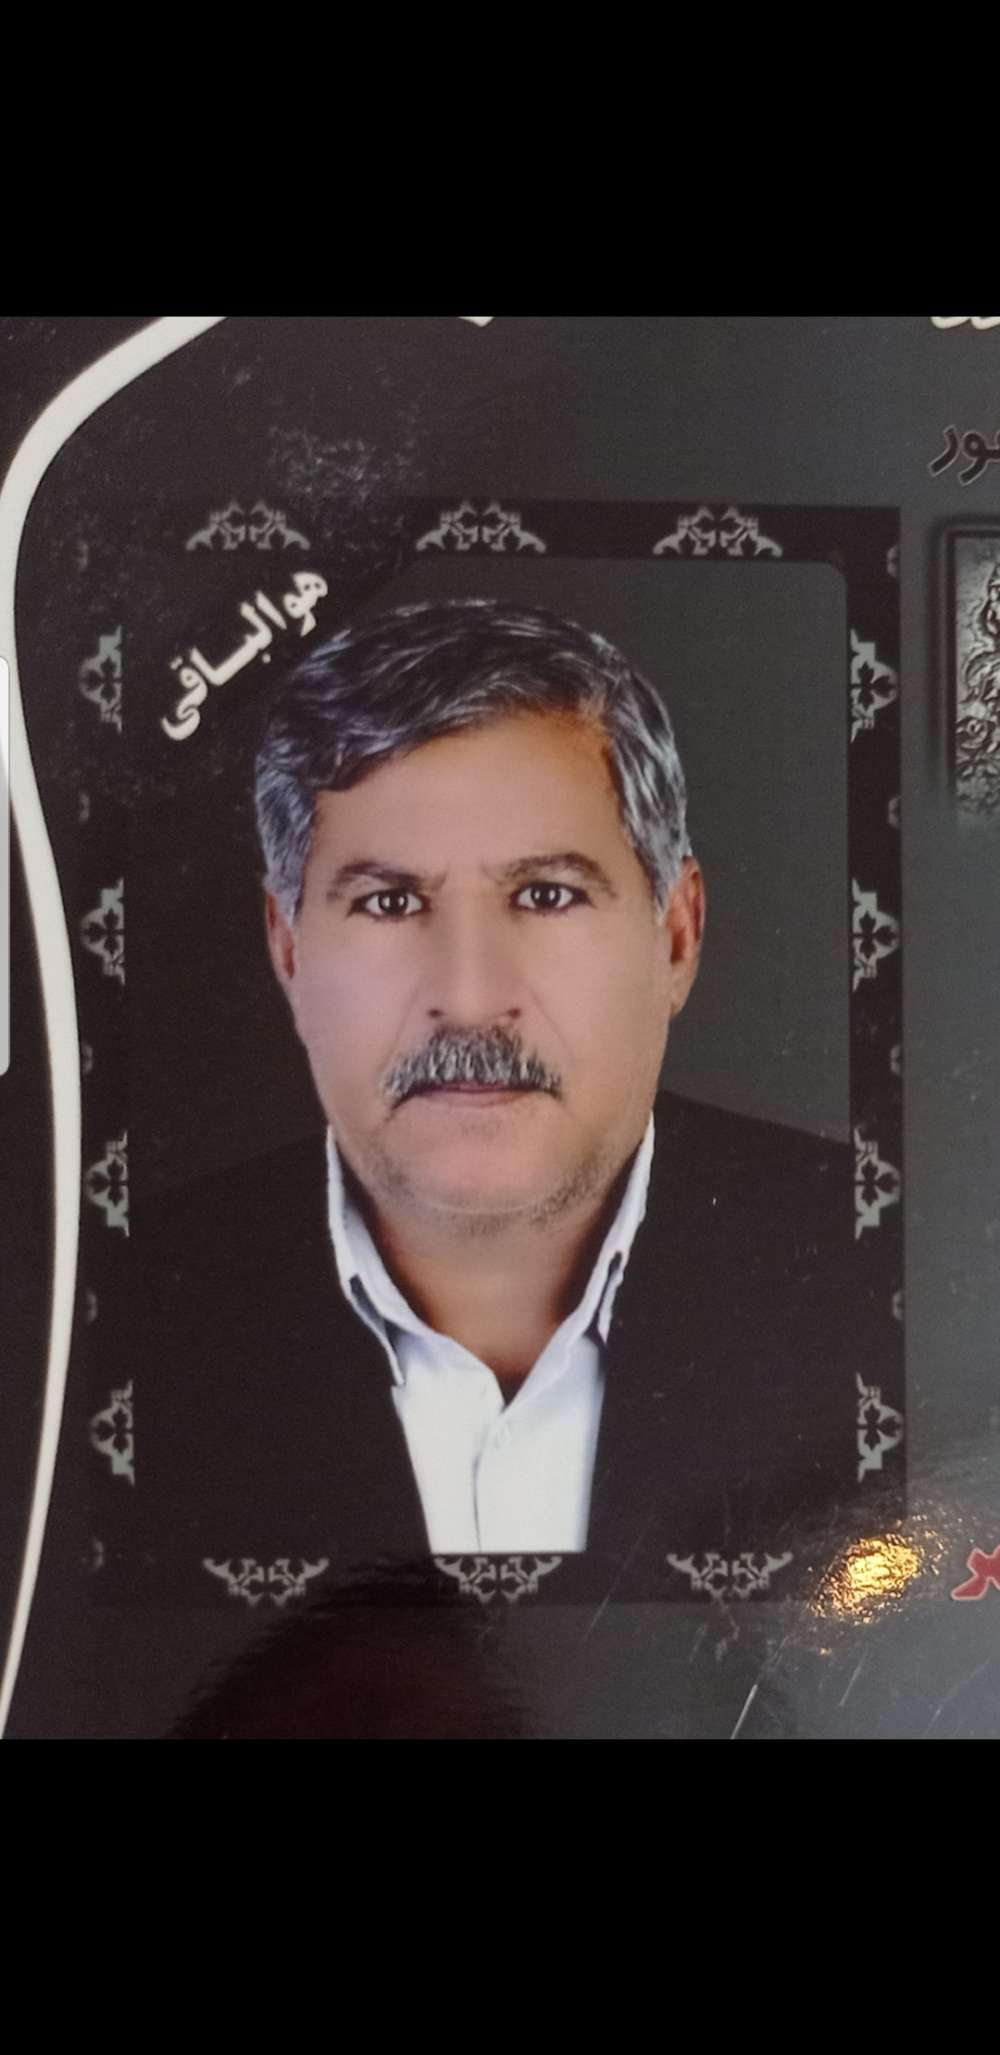  حاج عباس رضایی زاده